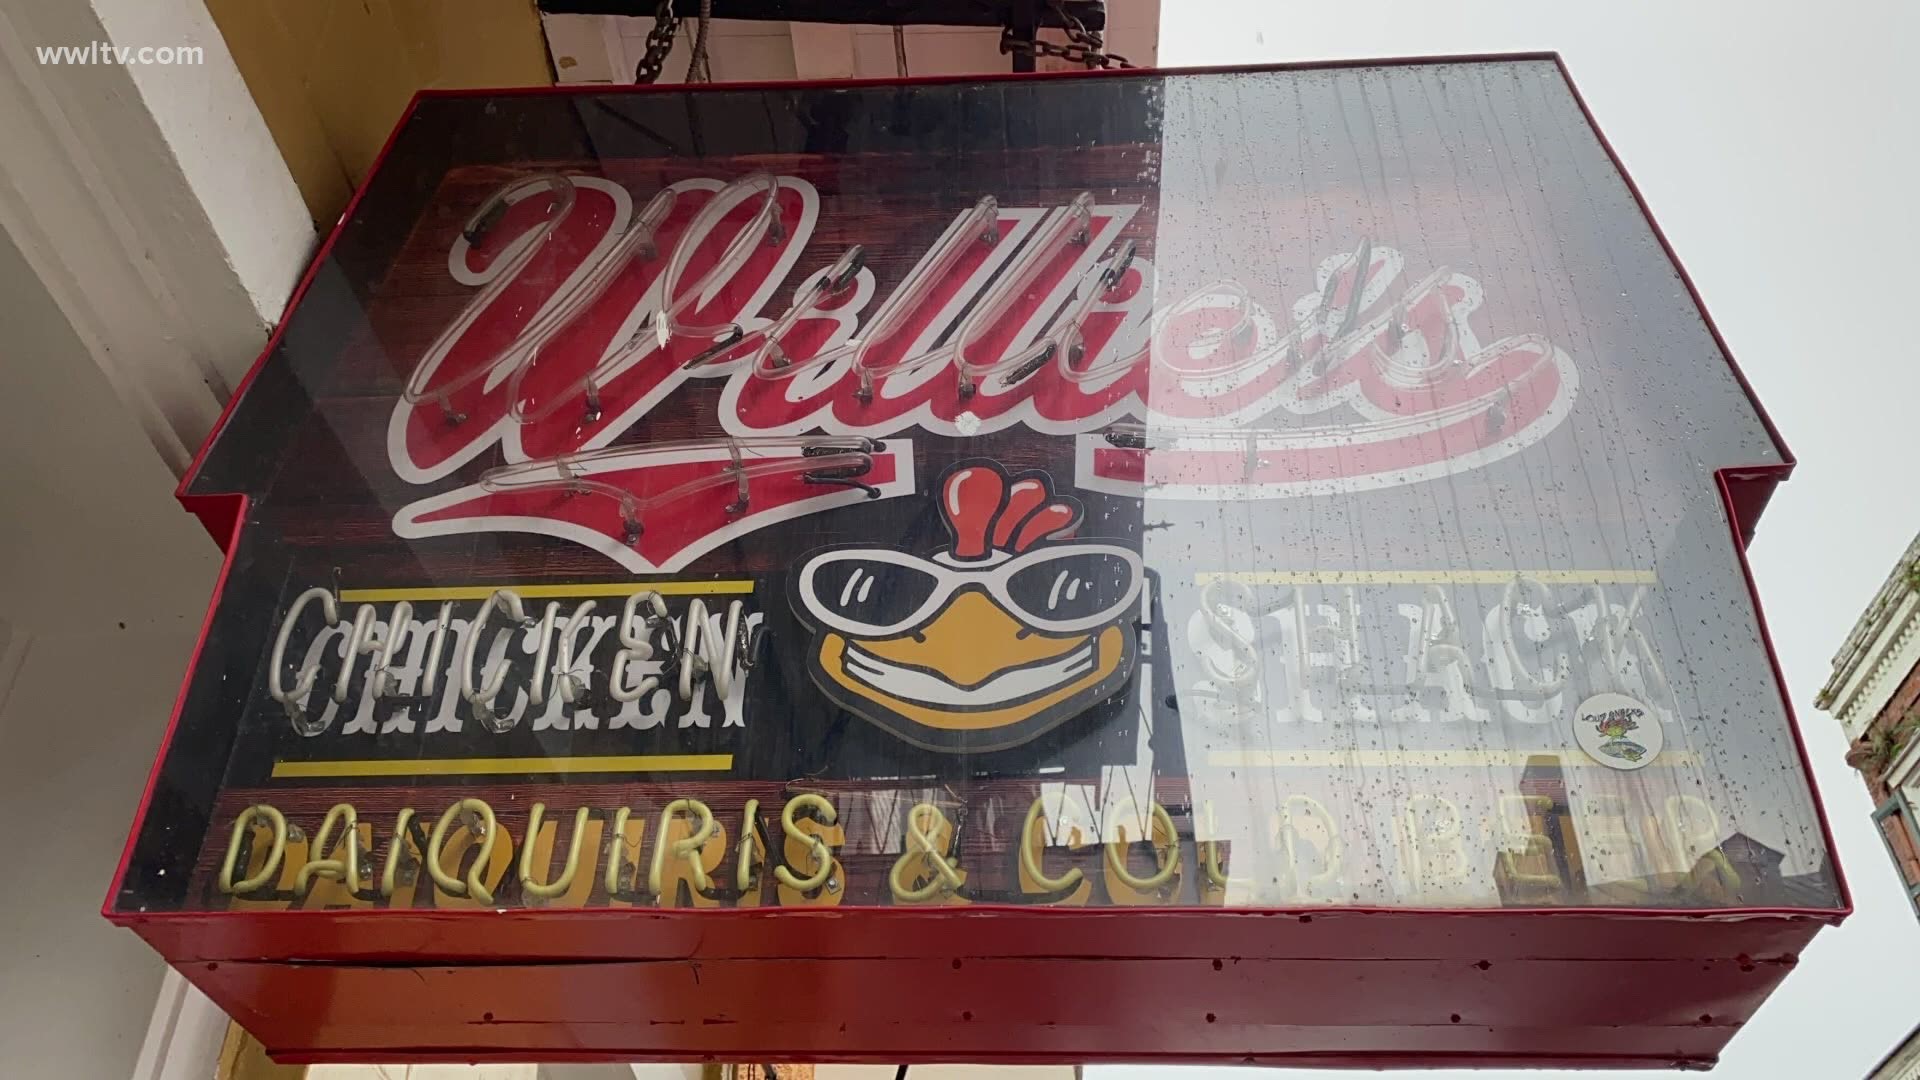 Willie's Chicken Shack, other restaurants shut down in COVID-19 restriction crackdown